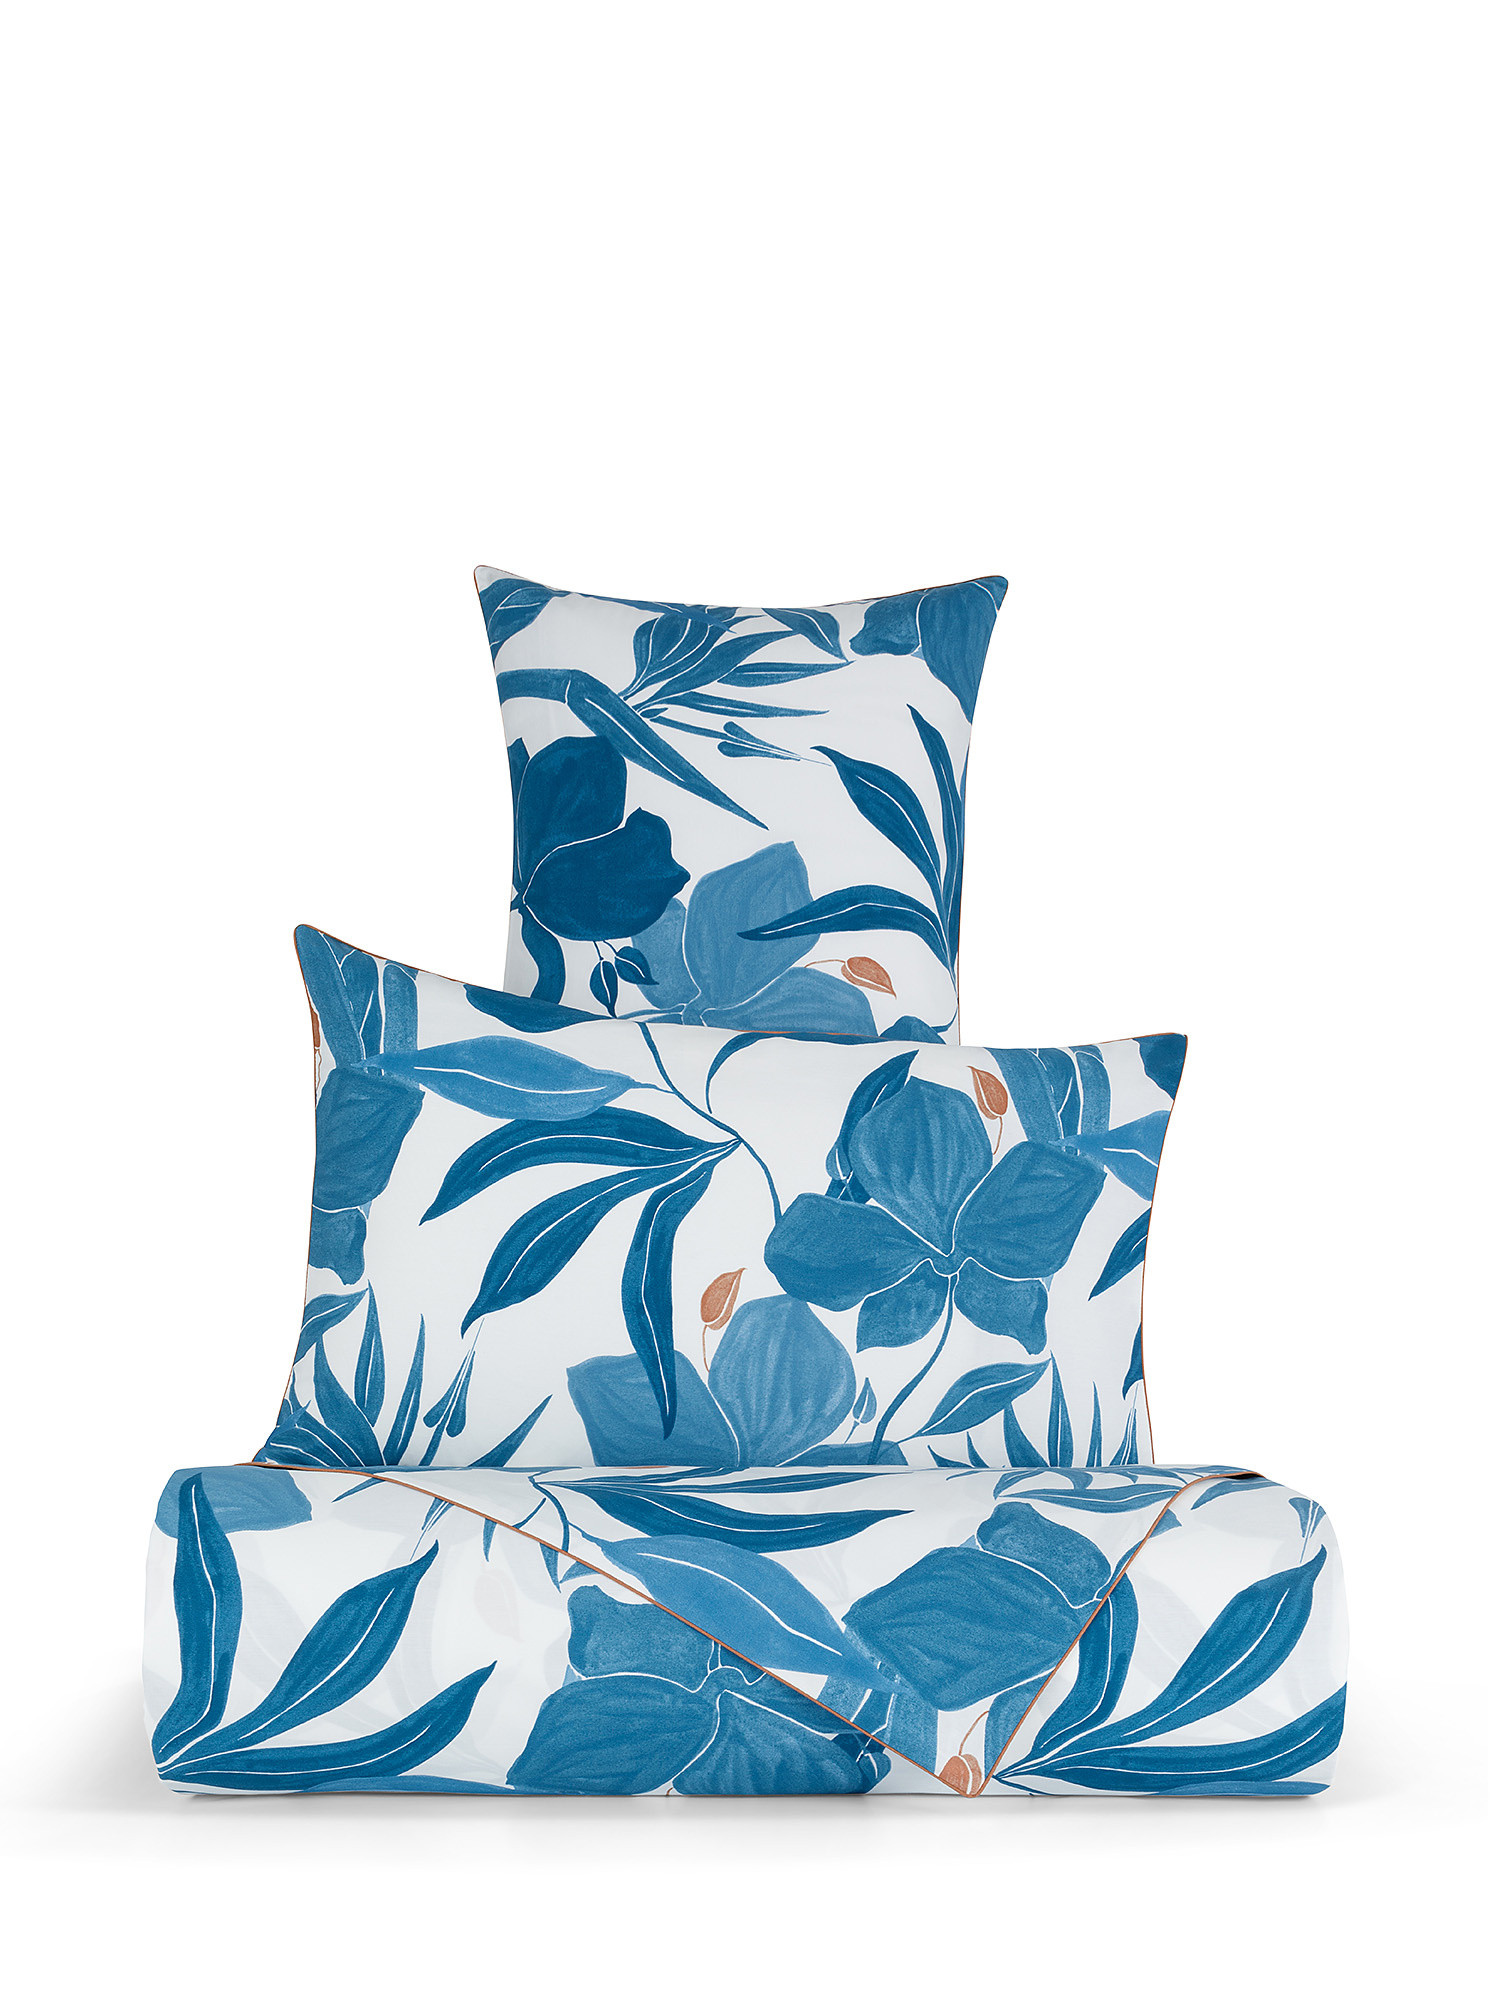 Lenzuolo liscio percalle di cotone fantasia floreale, Blu, large image number 0